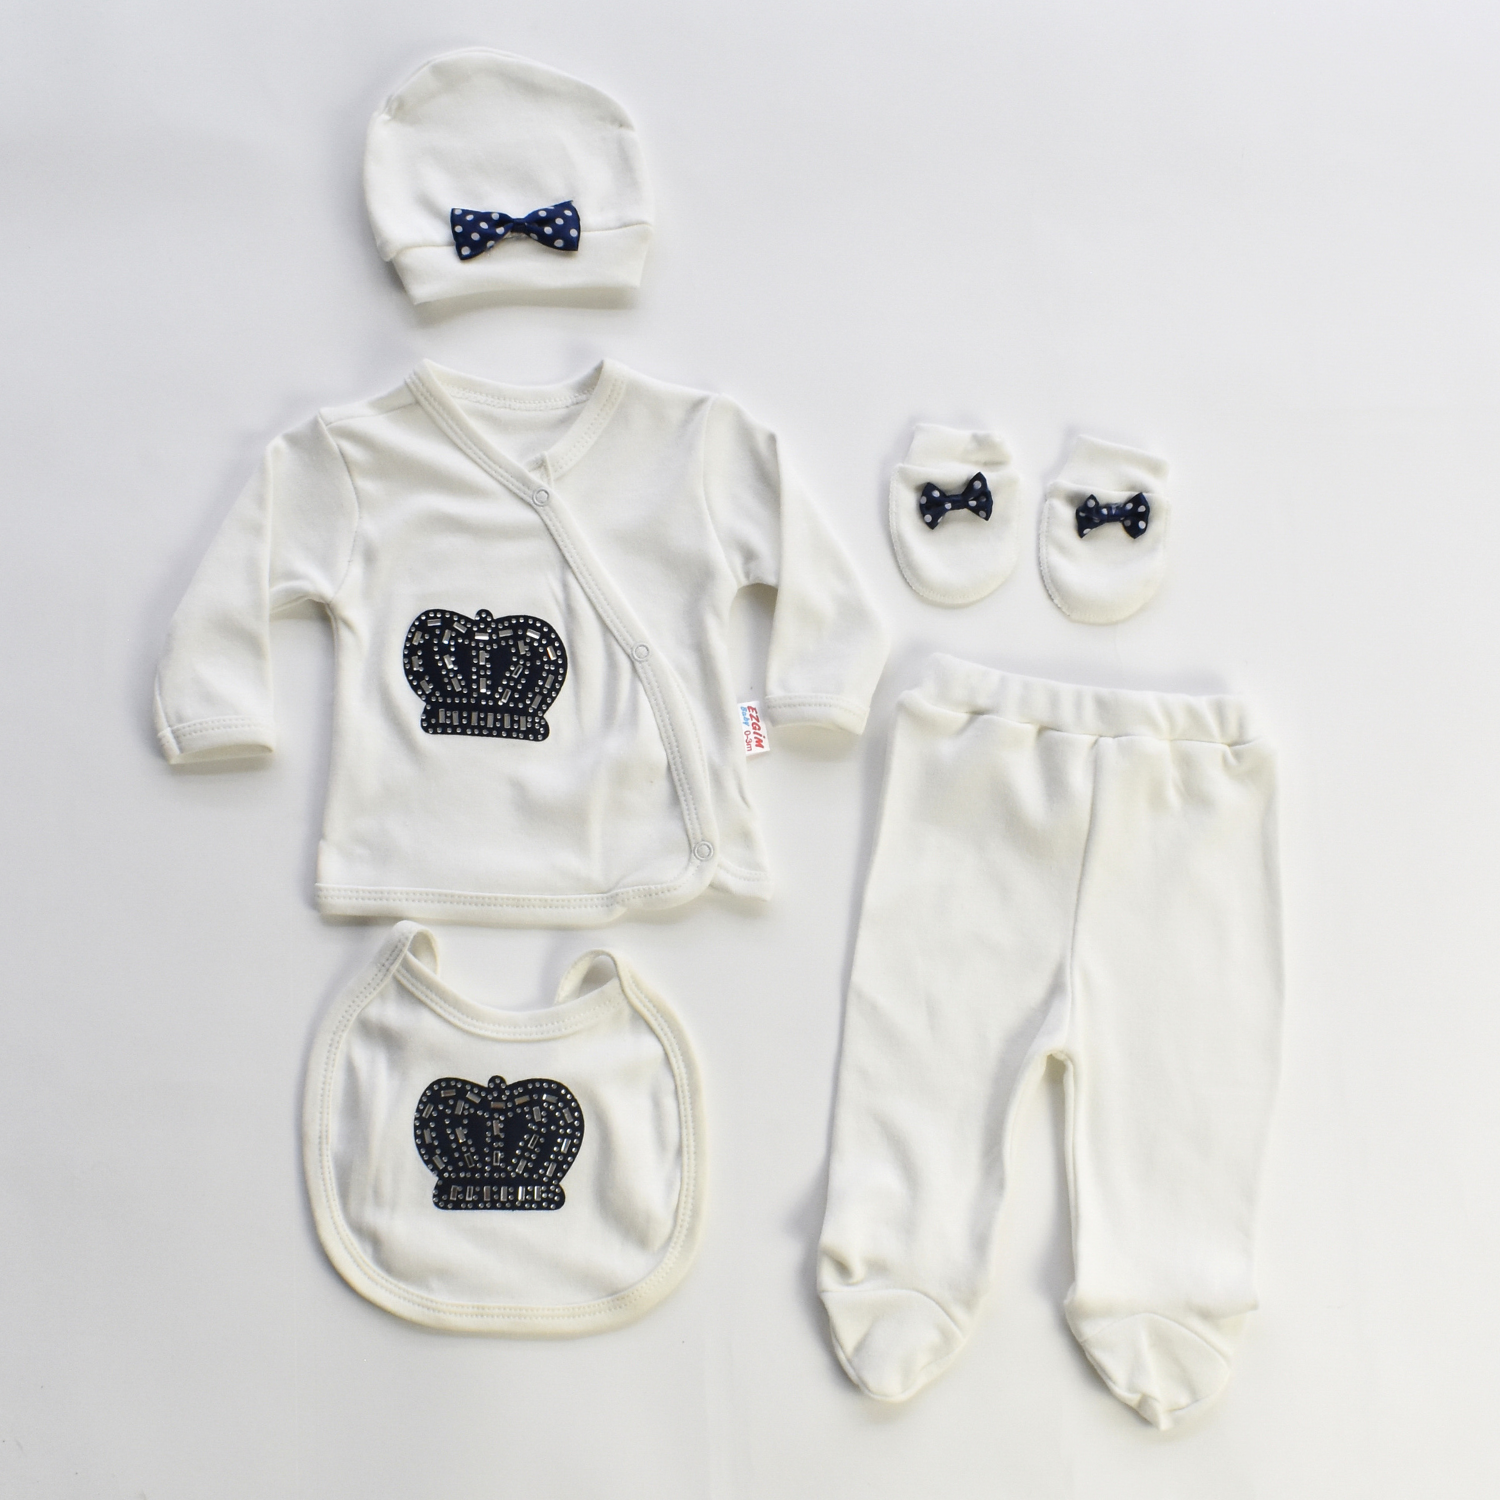 The Sweet King Baby Pajama Set